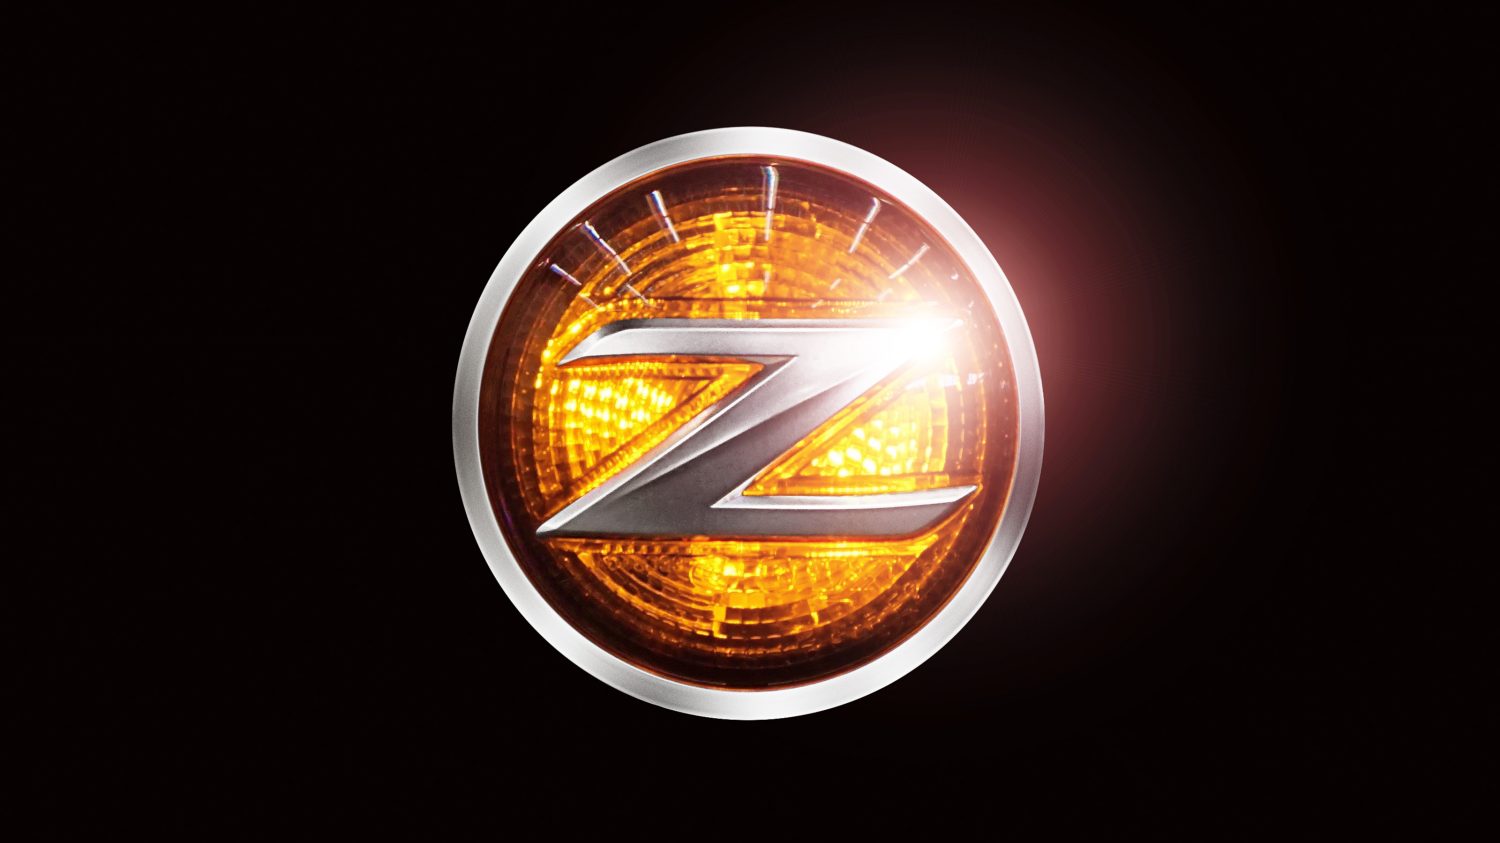 Insignias Z del diseño exterior del Nissan 370Z Roadster